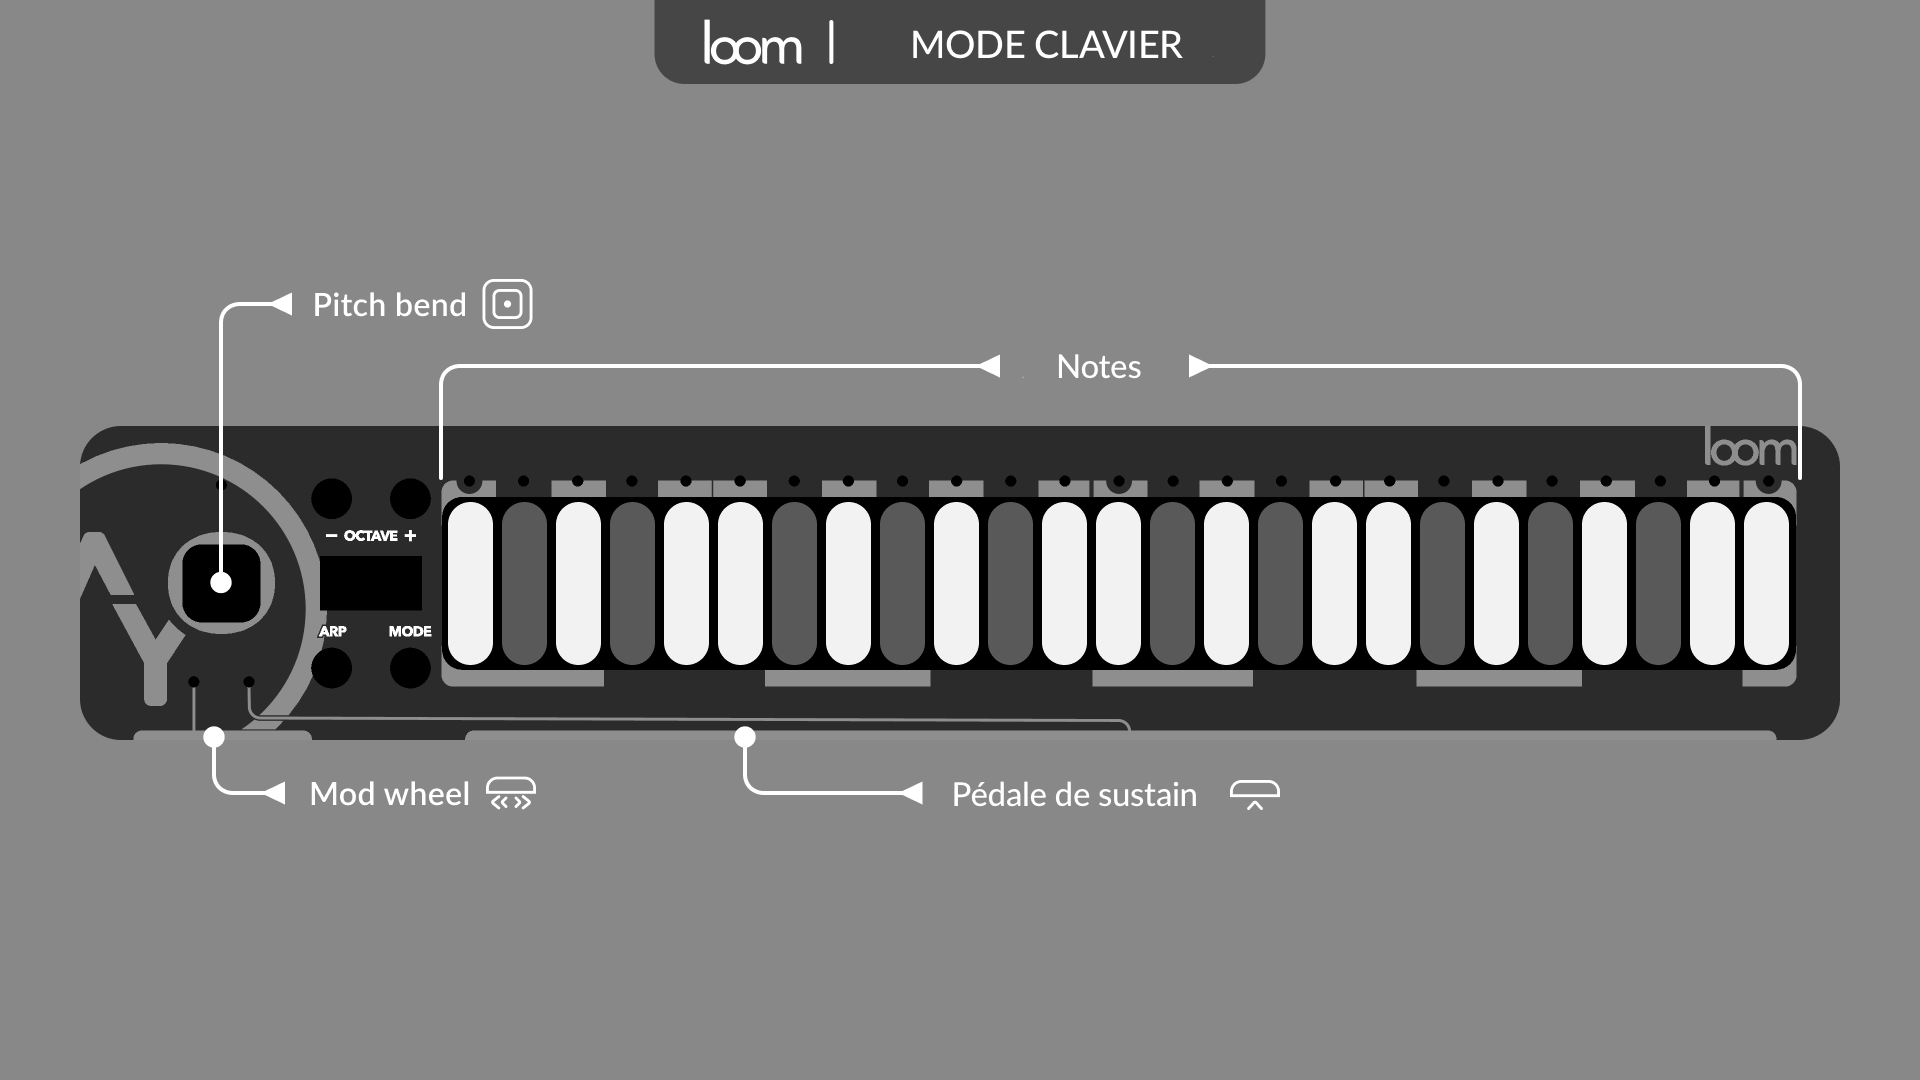 Mode clavier avec les réglages par défaut : notes sur la surface, pédale de sustain sur la barre, molette de modulation sur le slider, pitch bend sur la action zone.